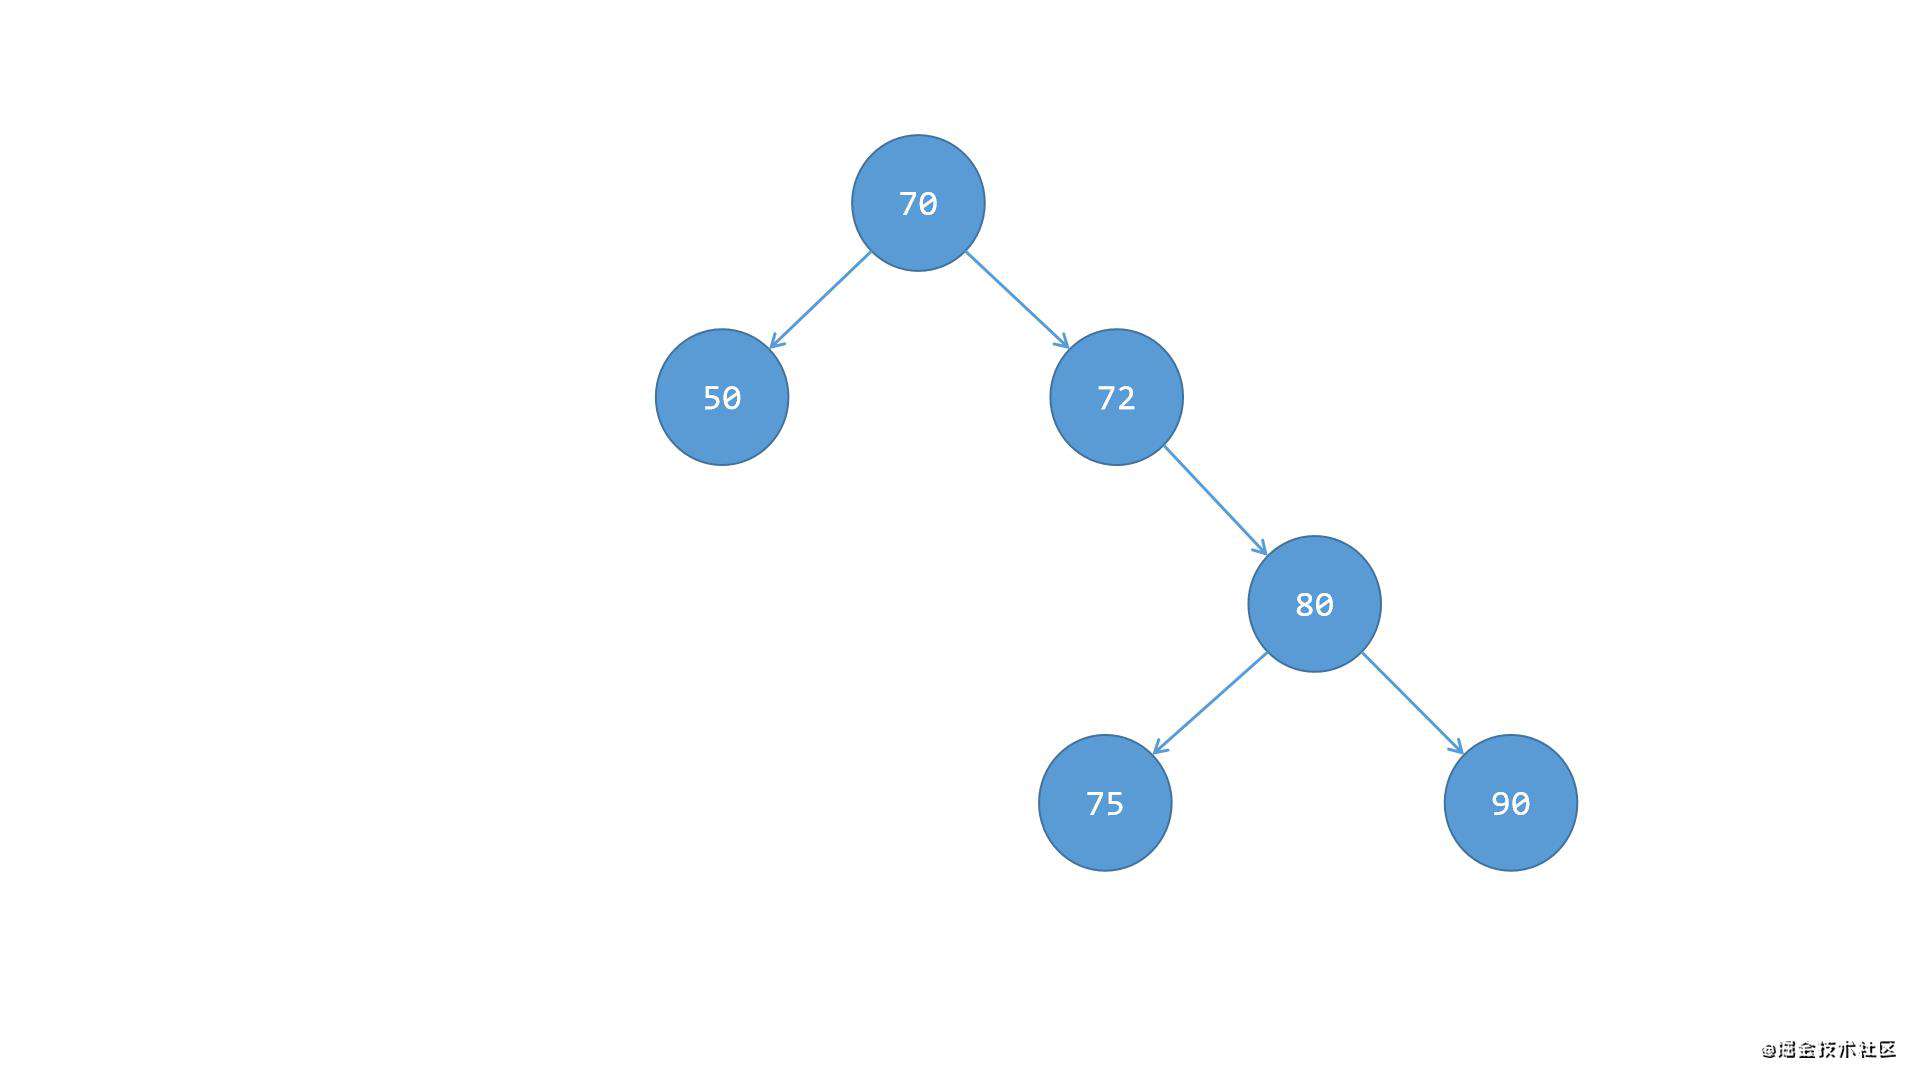 16-数据结构-二叉树（第二部分：自平衡二叉树，自平衡二叉树是建立在二叉搜索树基础之上的，需要先弄懂之前的二叉搜索树）